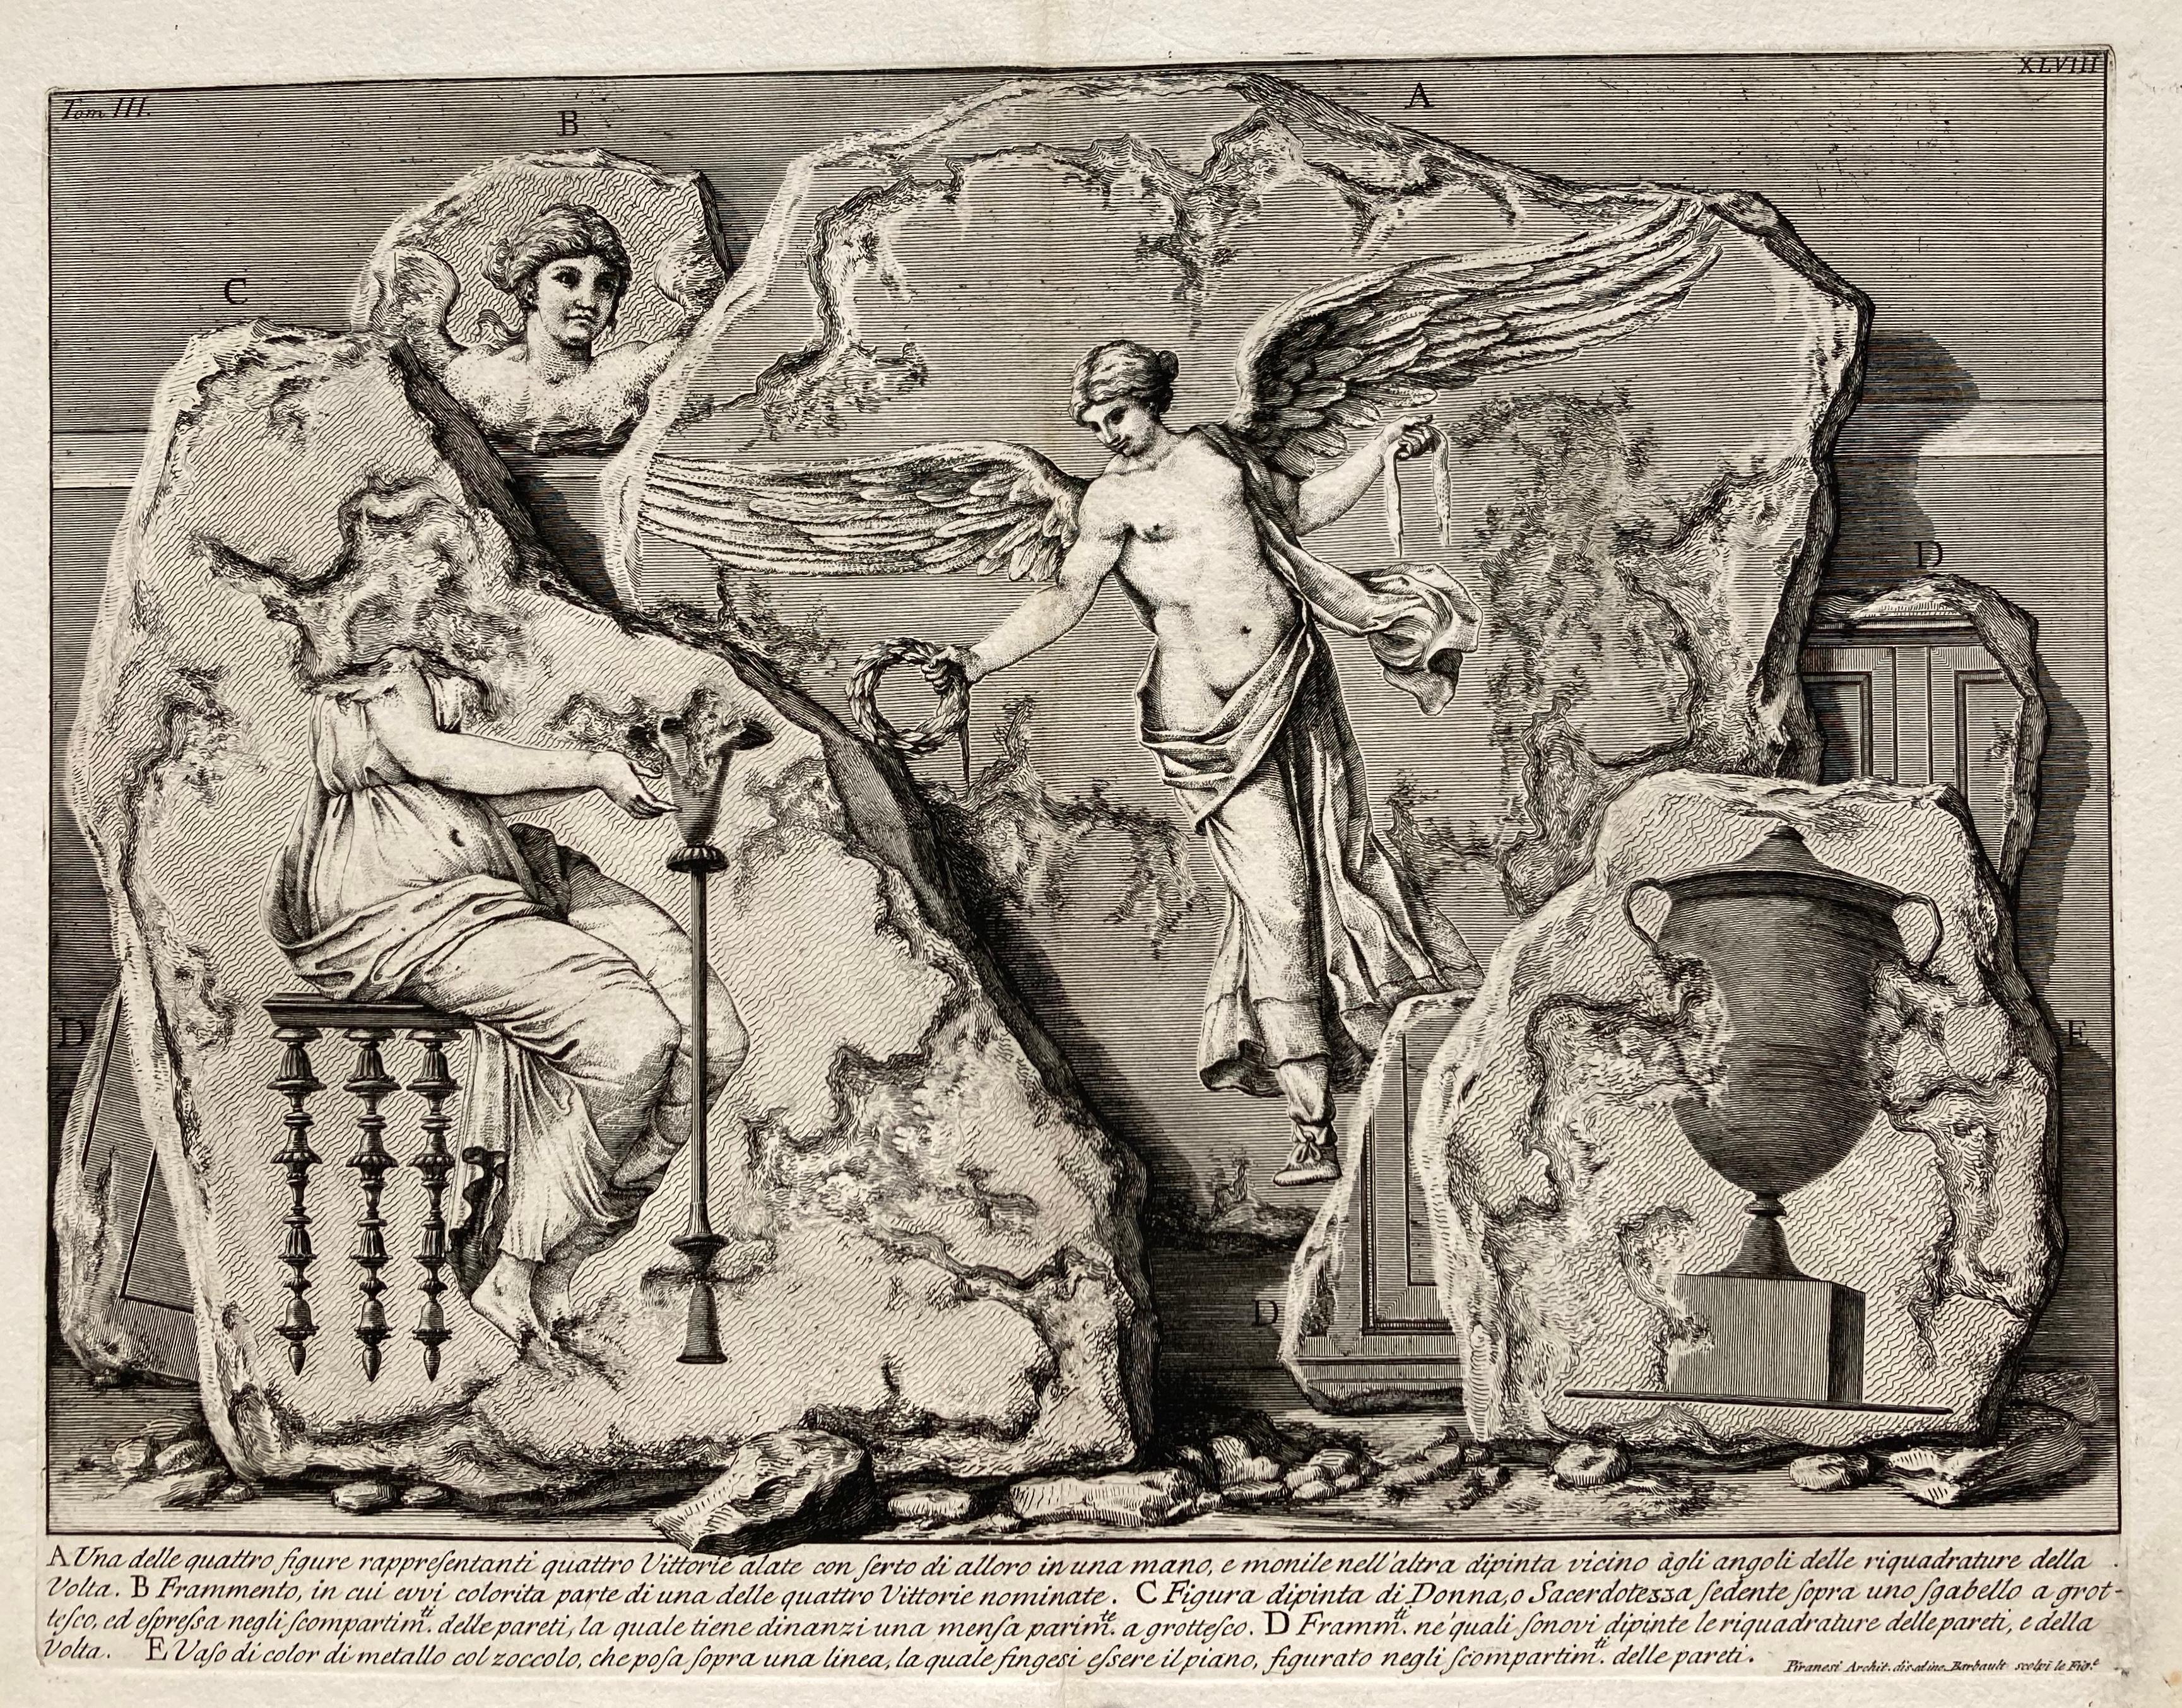 GIOVANNI BATTISTA PIRANESI (1710-1778)

UNA DELLE QUATTRO FIGURE RAPPRESENTANTI QUATTTRO VITTORIE, (Focillon 330, Wilton-Ely 463) 1750-1756
Radierung, Tafel 48 aus 